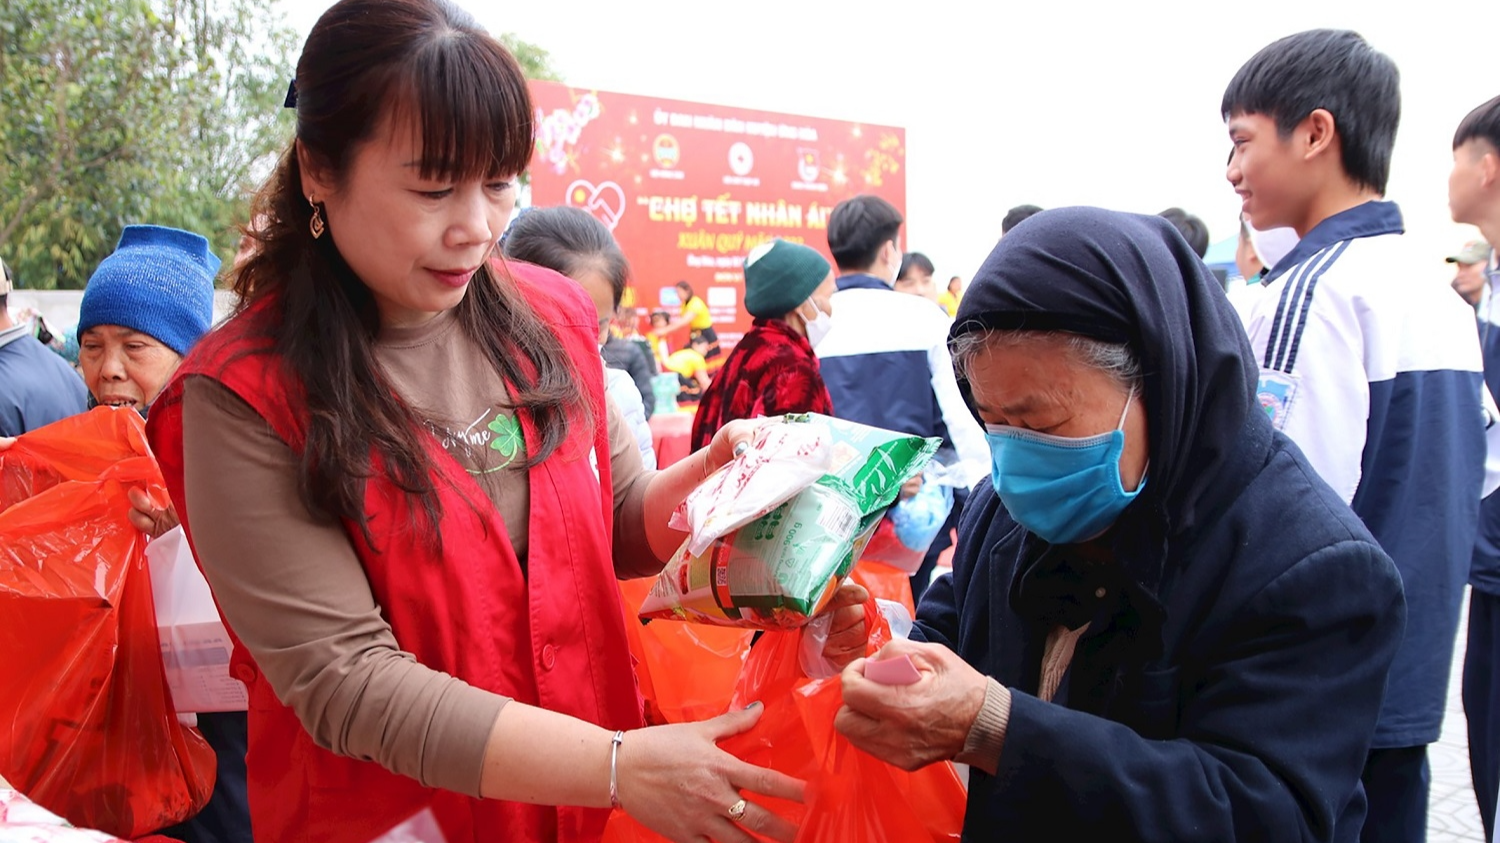 2024年是仁爱春节第二次举办，活动由越南红十字会主办，是对始于1999年的“为了贫困者和橙剂受害者的春节”活动的继承与发展。2024年仁爱春节的一大新亮点是有来越出席第11届亚太地区红十字与红新月国际会议（AP-11）的350多名代表的参与。  越南红十字会中央委员会主席裴氏和表示，活动规模宏大，旨在动员全社会的参与和贡献，帮助欢度春节。  裴氏和说：“仁爱春节从2023年开始举行，目的是照顾社会中的困难群体、弱势群体，活动对象覆盖更广，而不像以前只包括橙剂受害者。活动组织方式也有改进，活动受益对象不仅